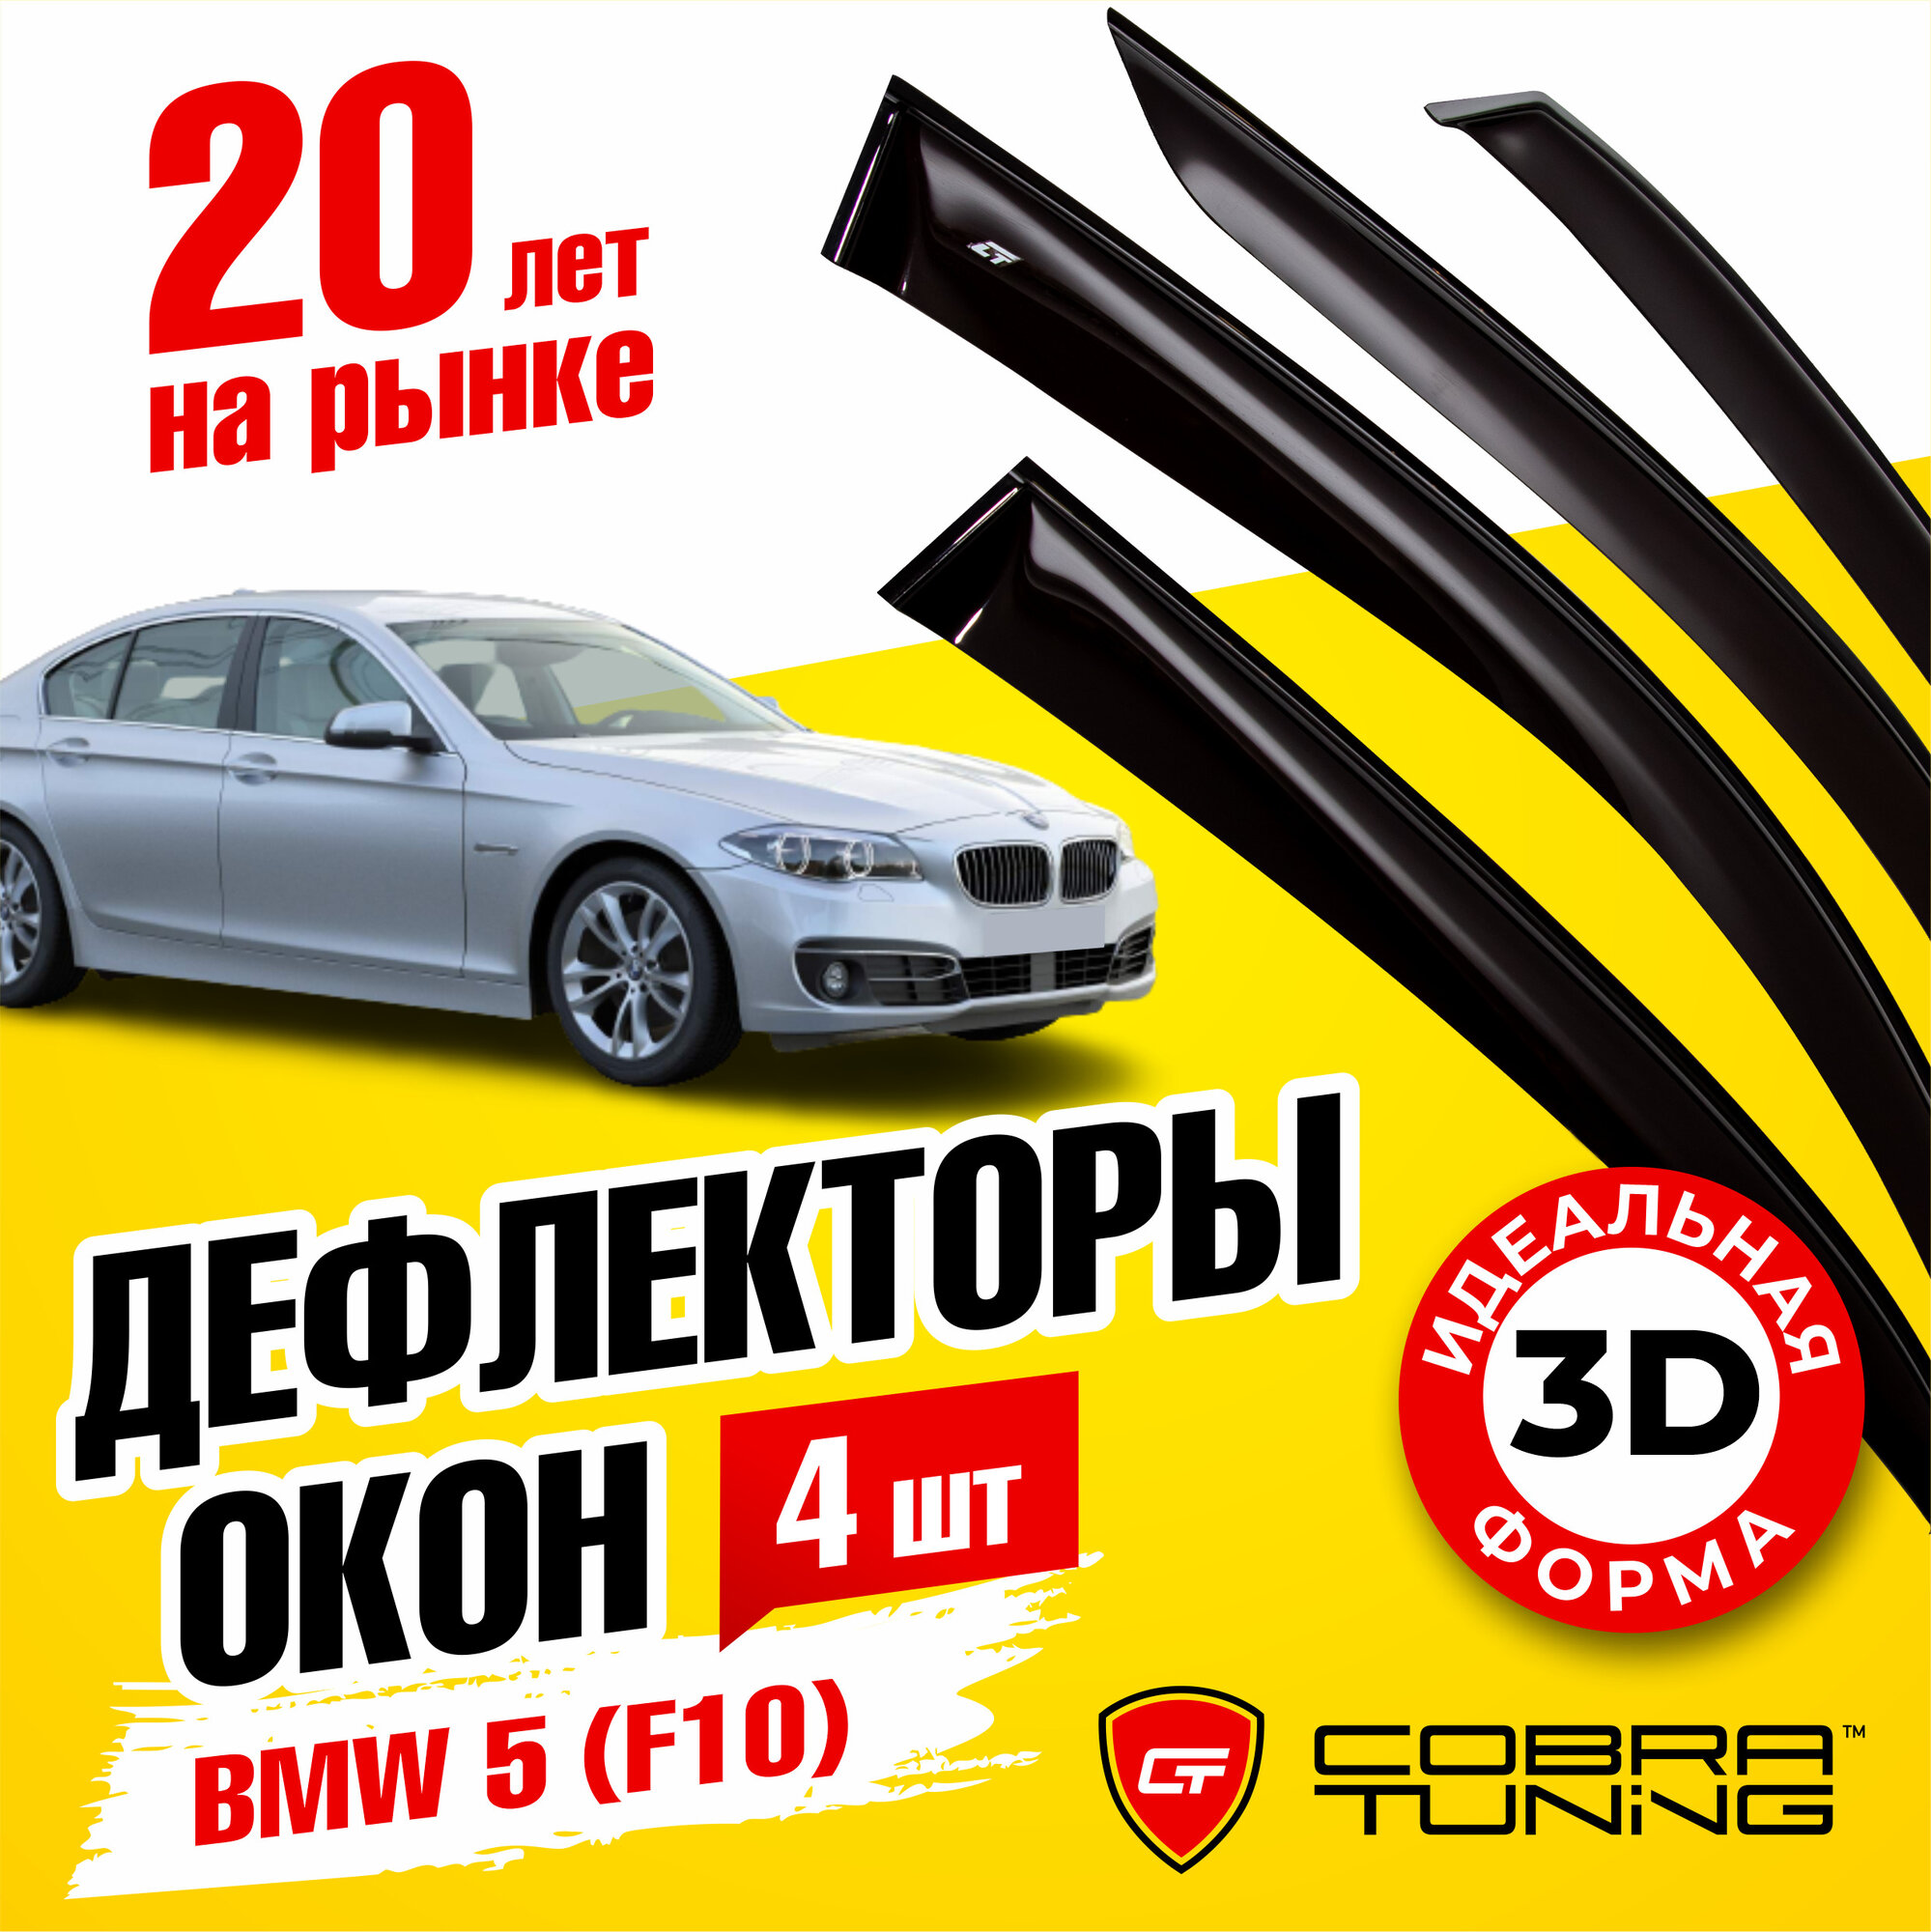 Дефлекторы боковых окон для BMW 5 (БМВ) седан (F10) 2011-2017, ветровики на двери автомобиля, Cobra Tuning